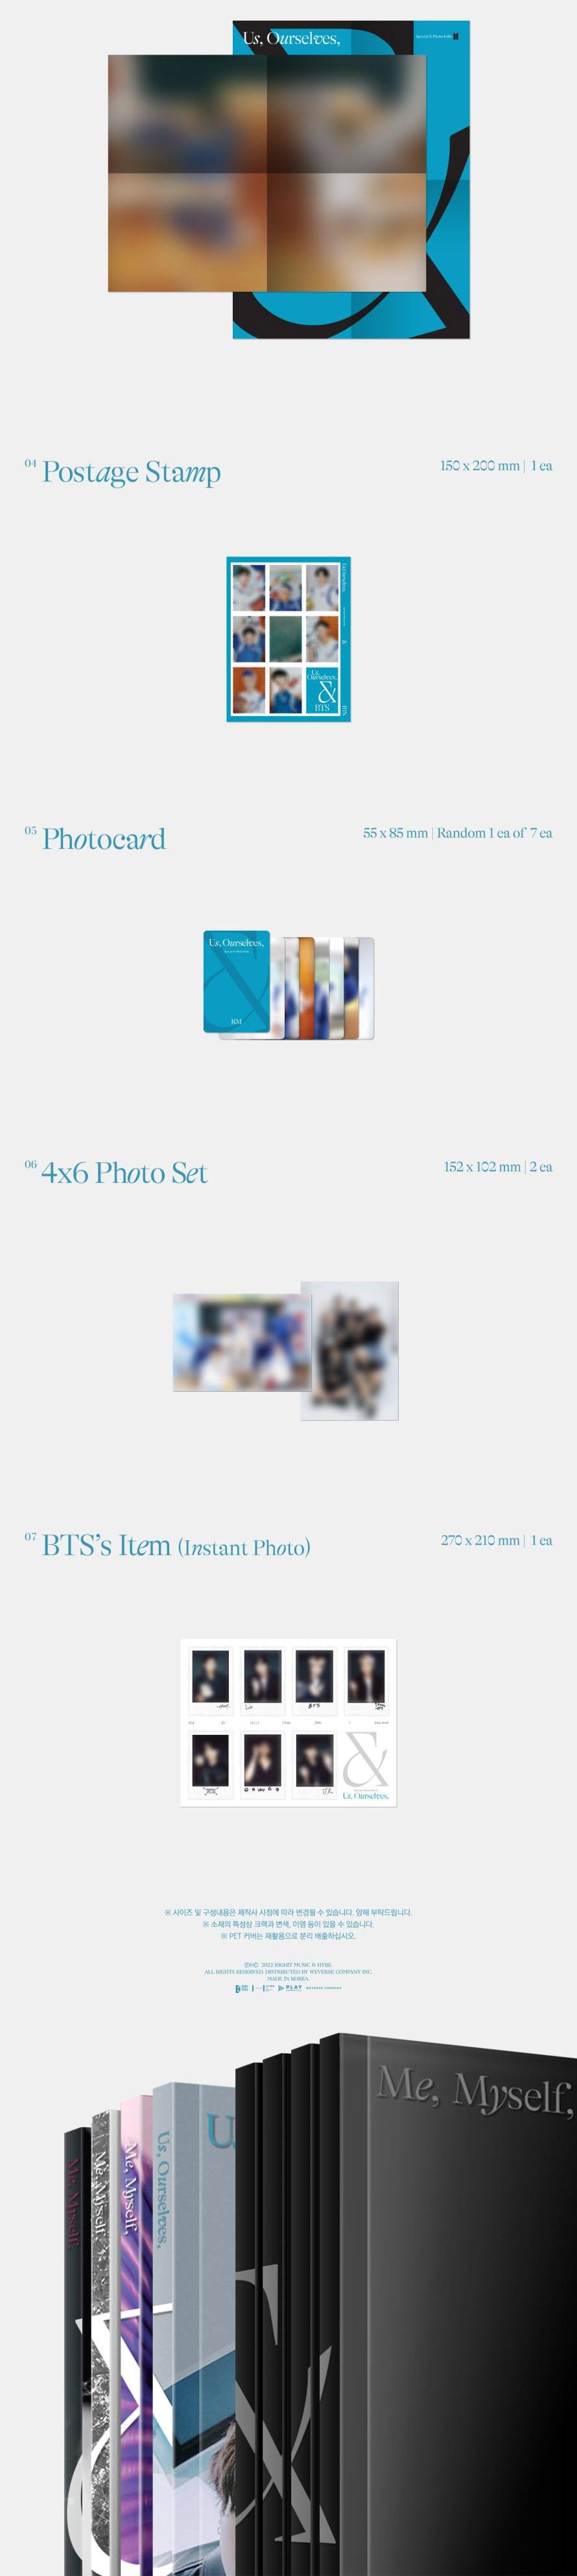 BTS Special 8 Photo-Folio Set